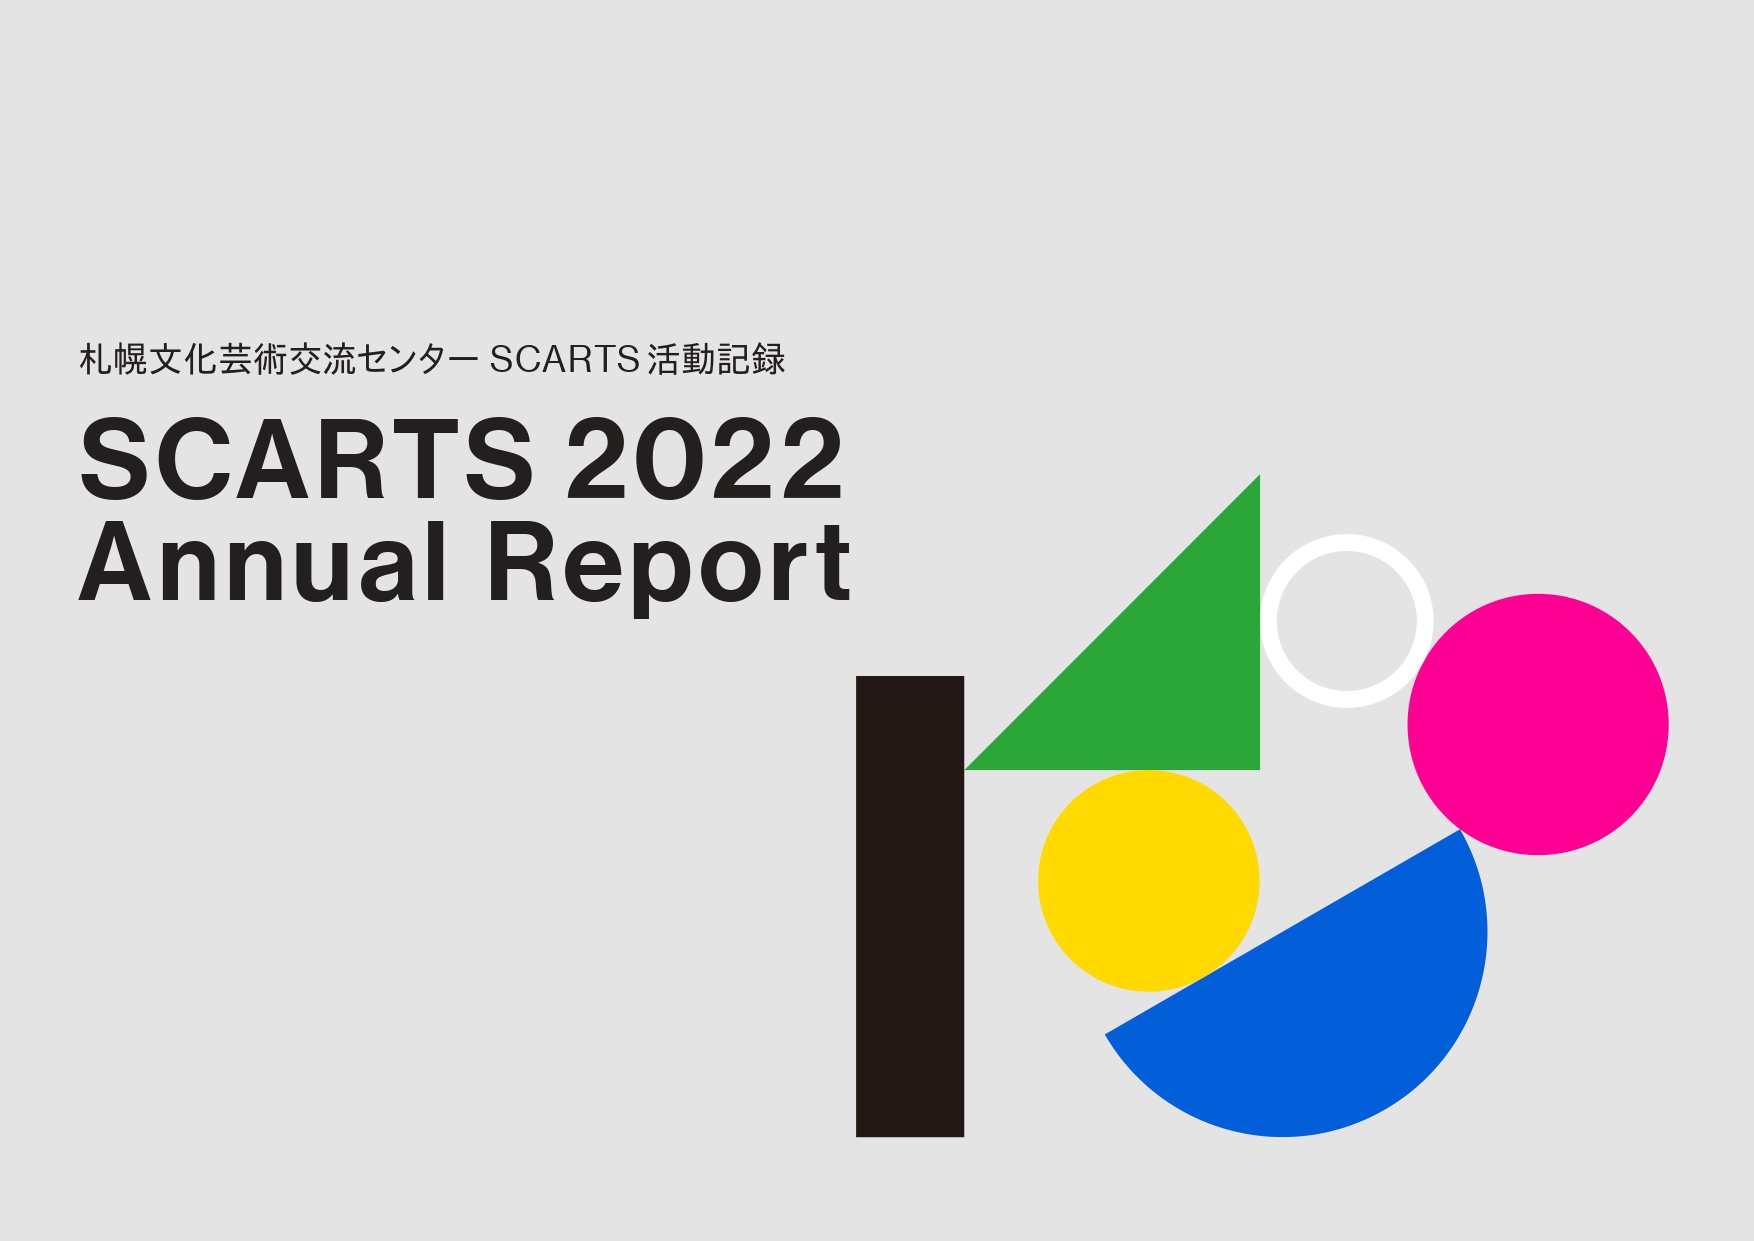 「SCARTS 2022 Annual Report」を公開しました。イメージ